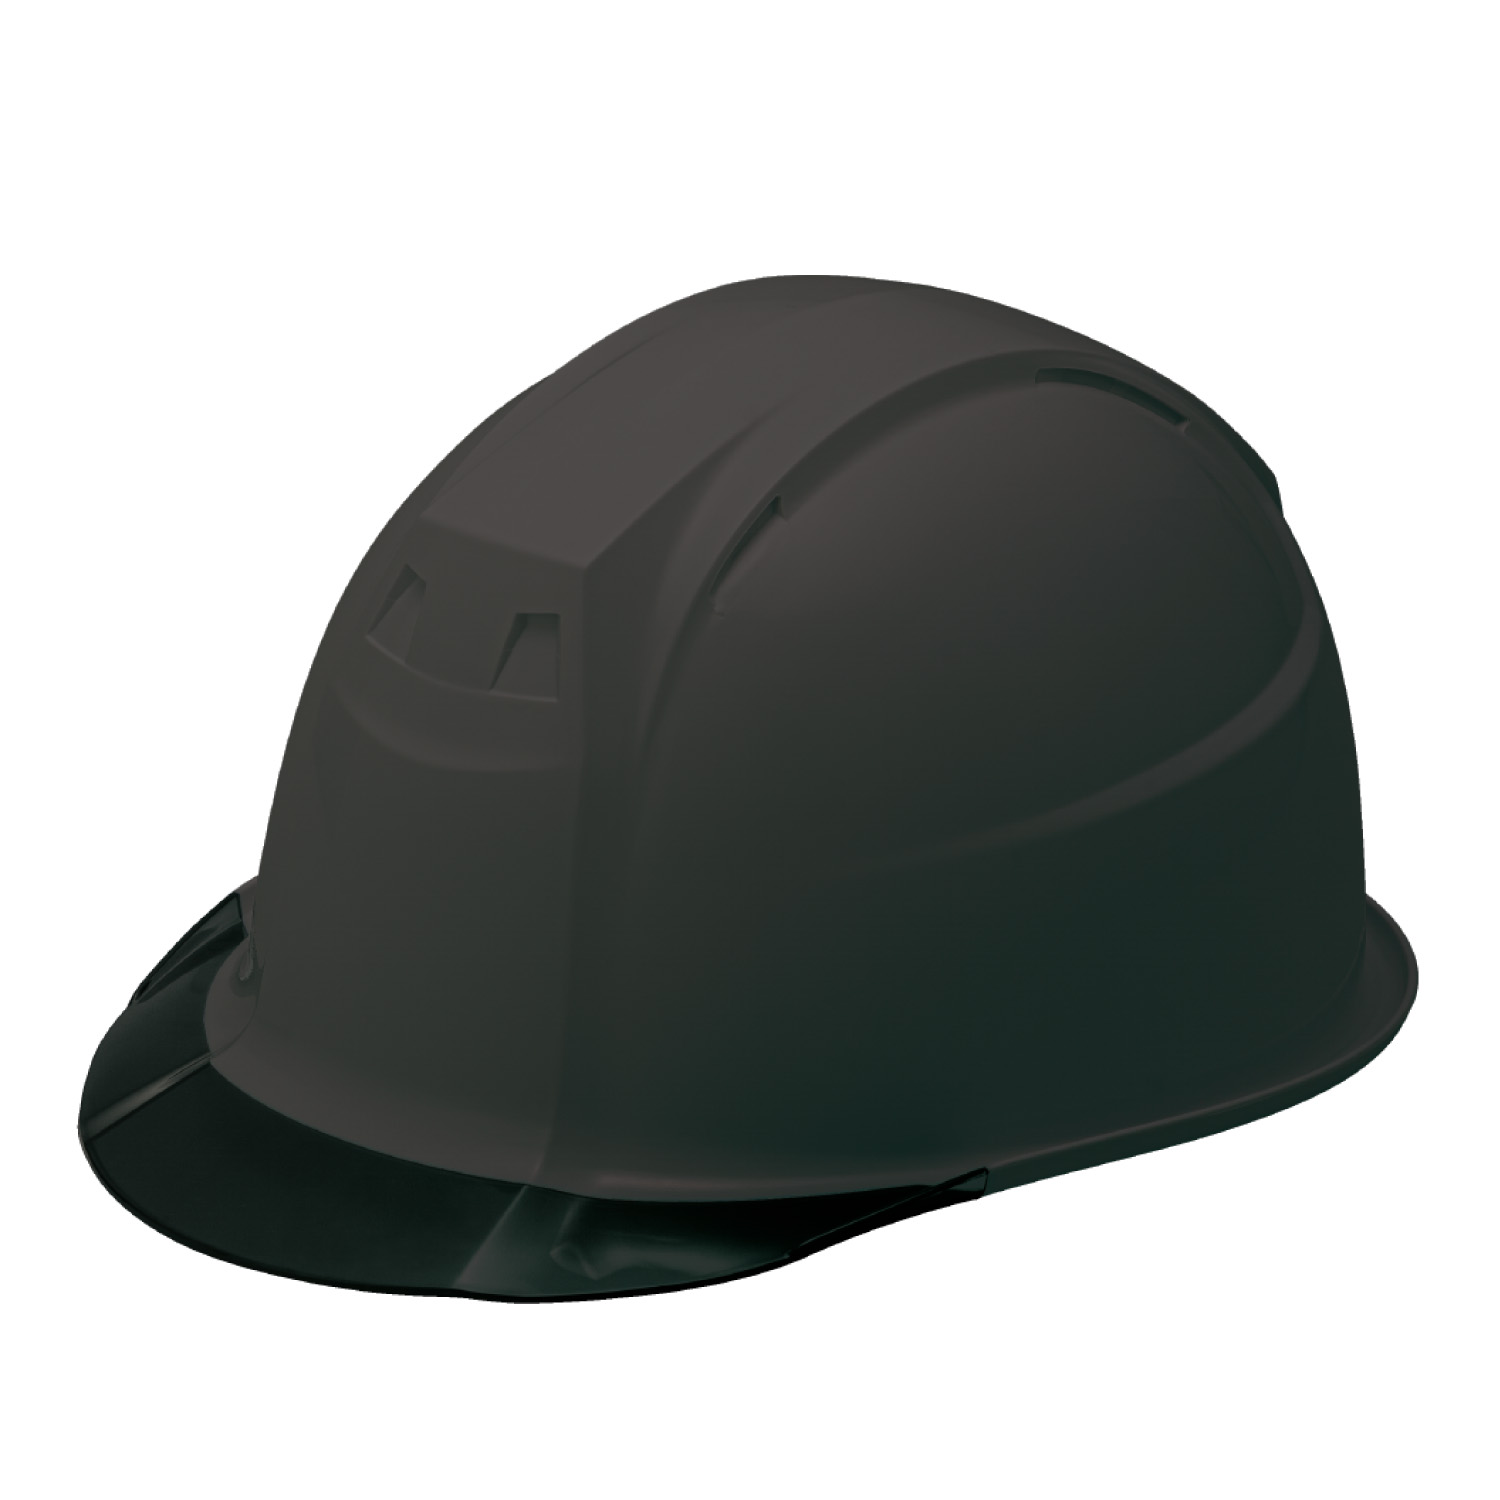 ヘルメット 保護帽 Fo III-1 飛来・落下物用 電気用 通期孔なし スモークバイザー 透明ひさし 全7色 加賀ヘルメット KAGA